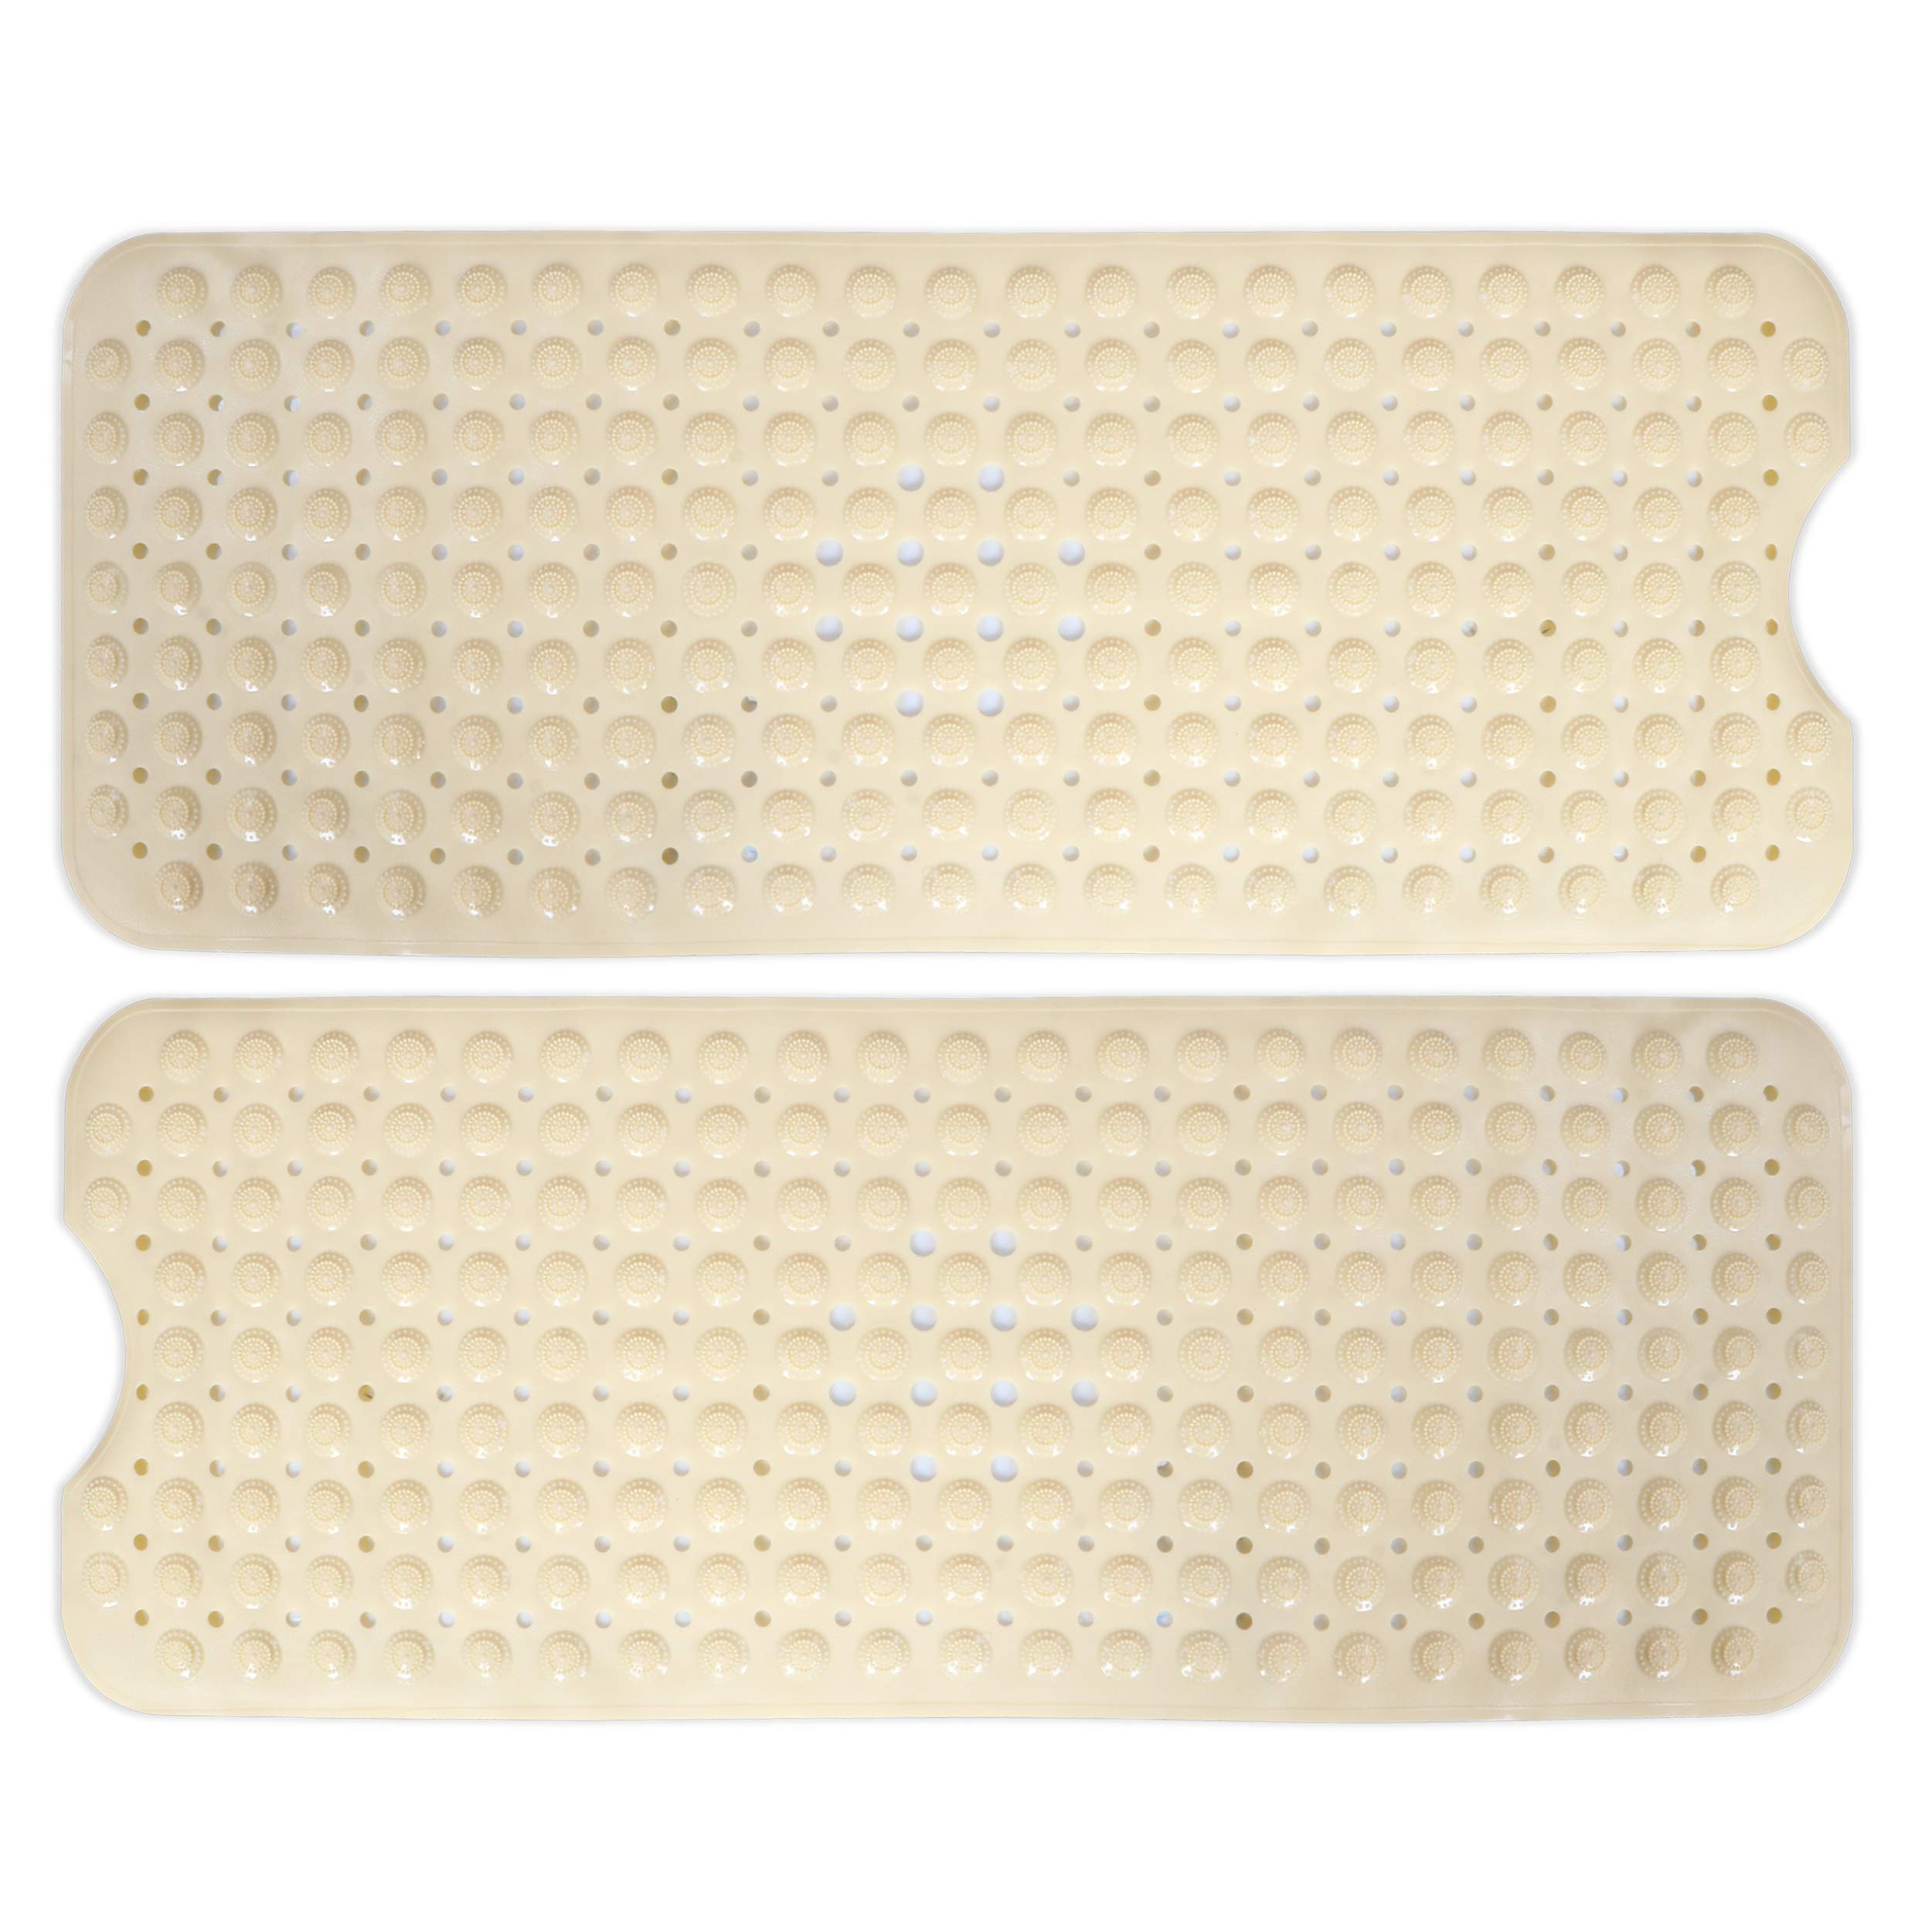 PVC Shower Mat Anti-Slip with Massage Acupressure Points, 40x100 cm, Beige